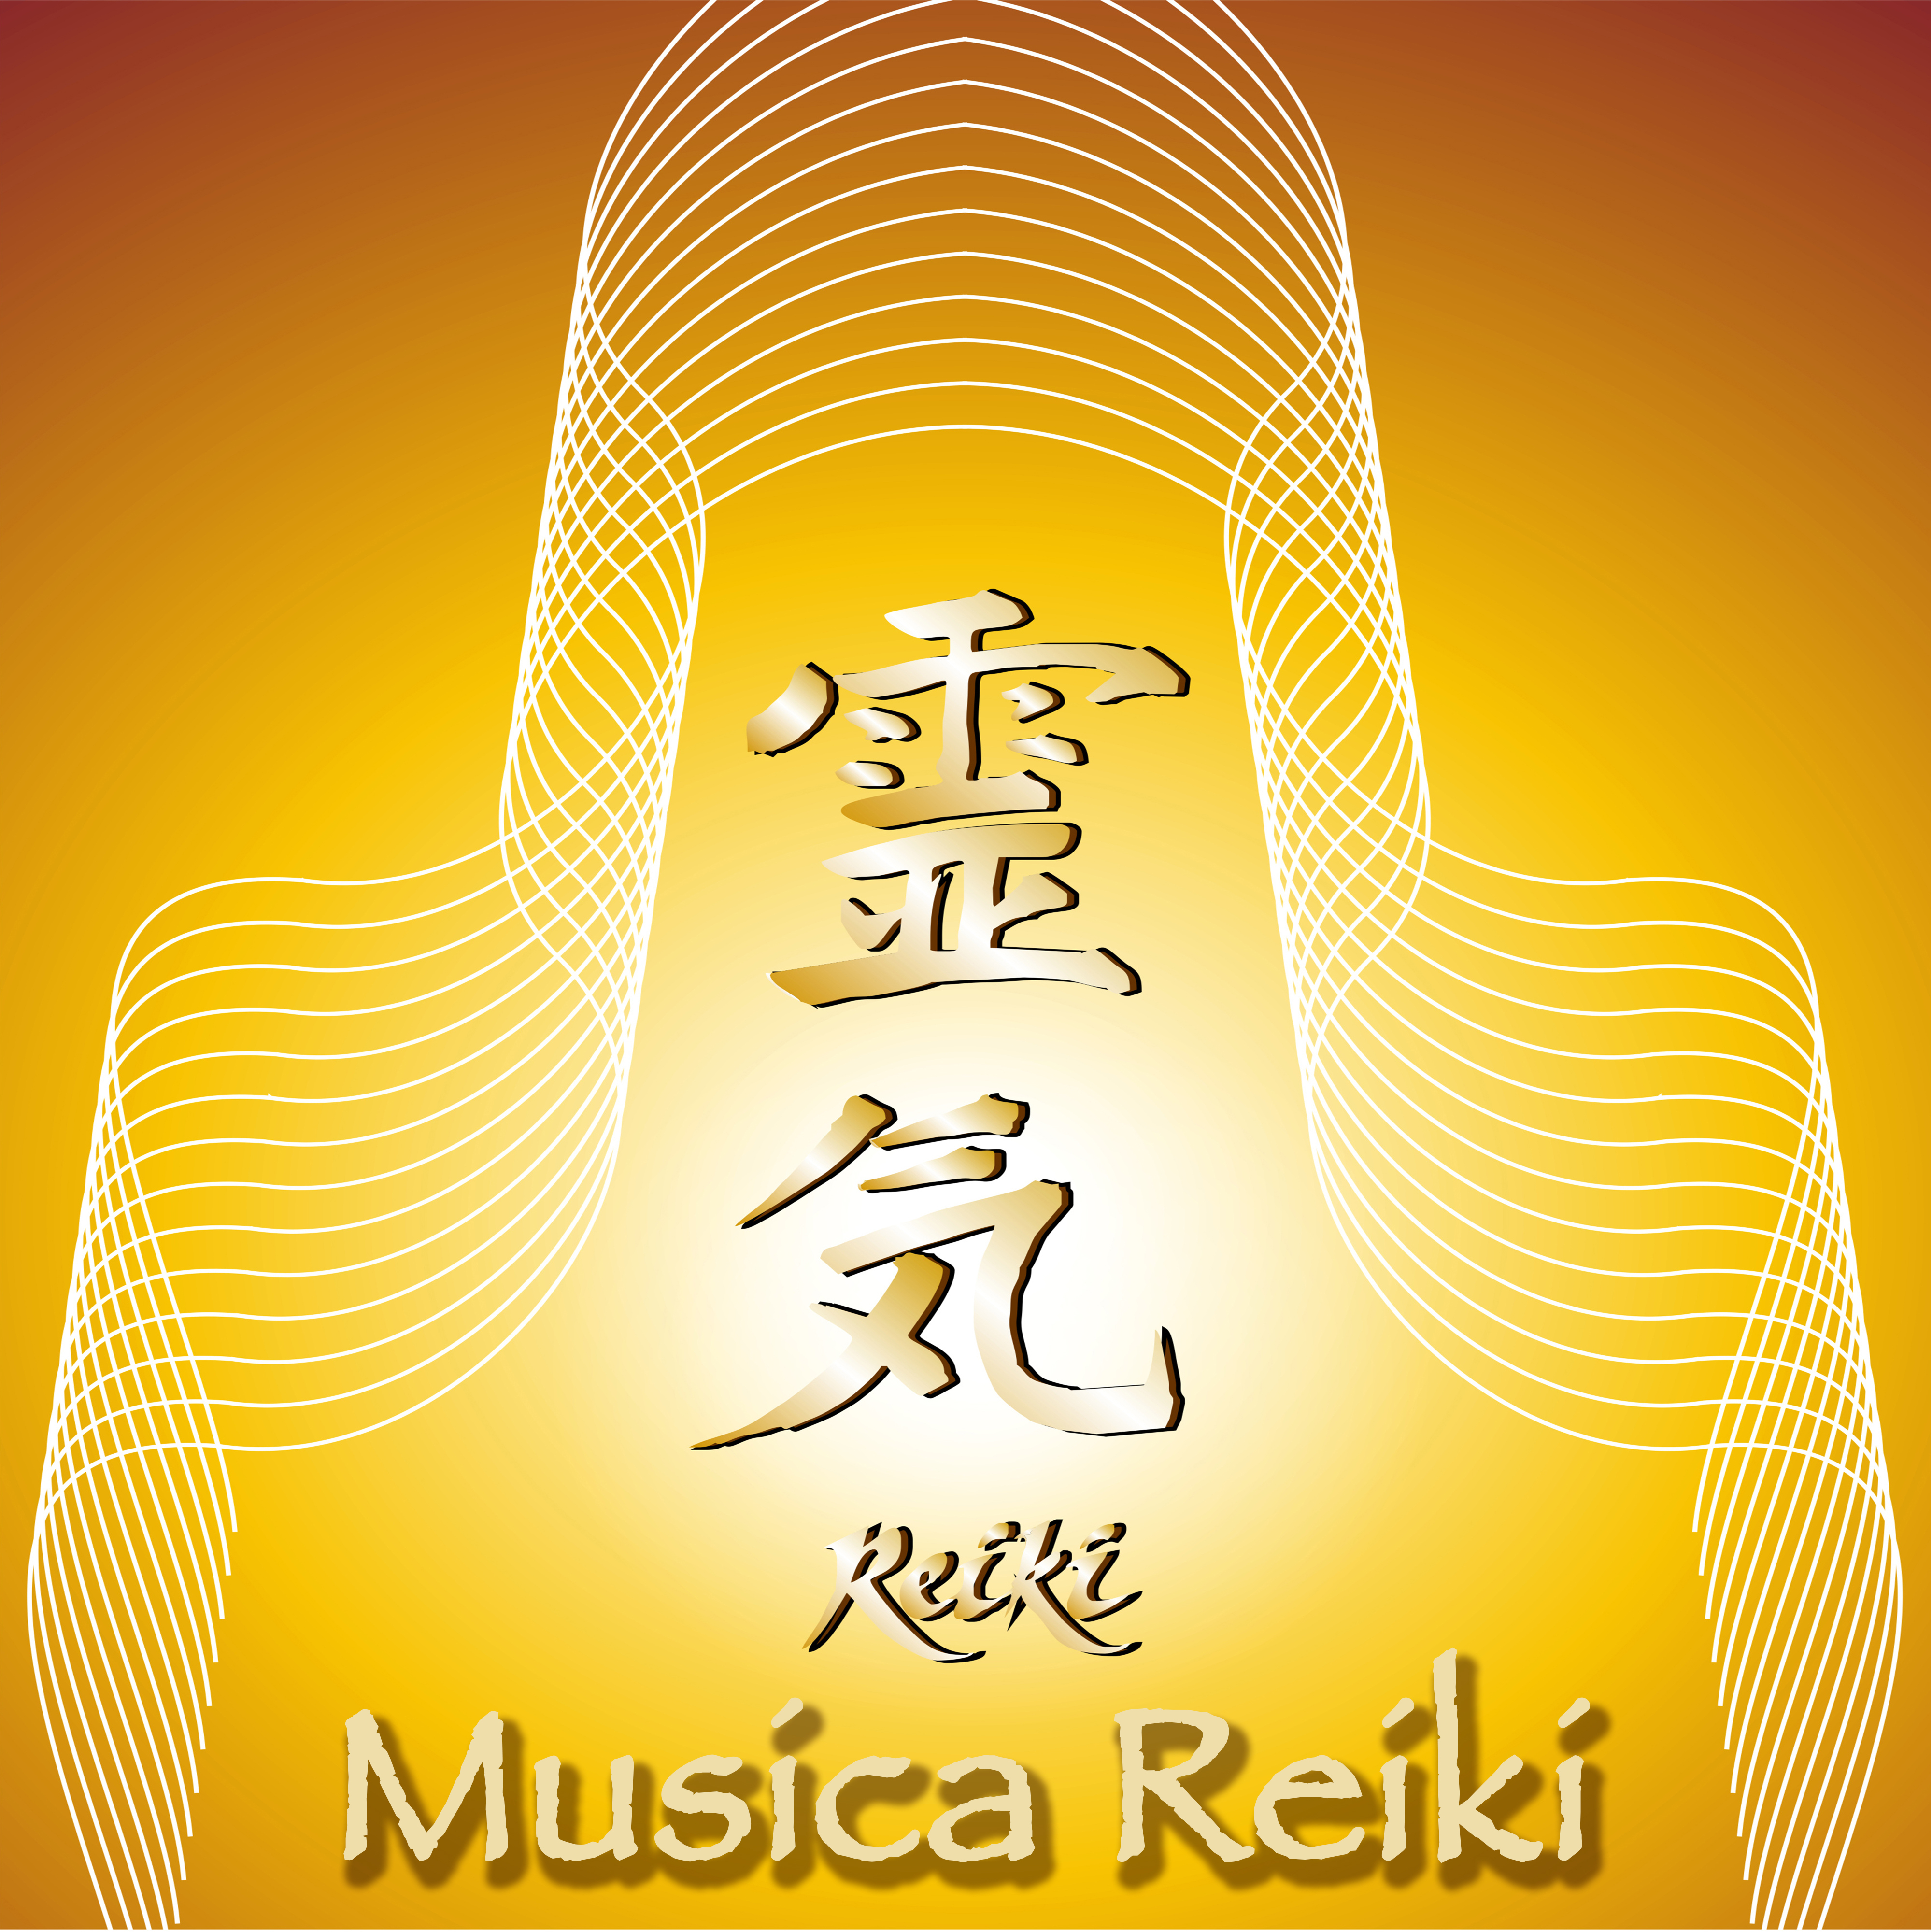 Musica Reiki  Canciones Relajantes para Armonia del Espiritu con Reiki y Yoga